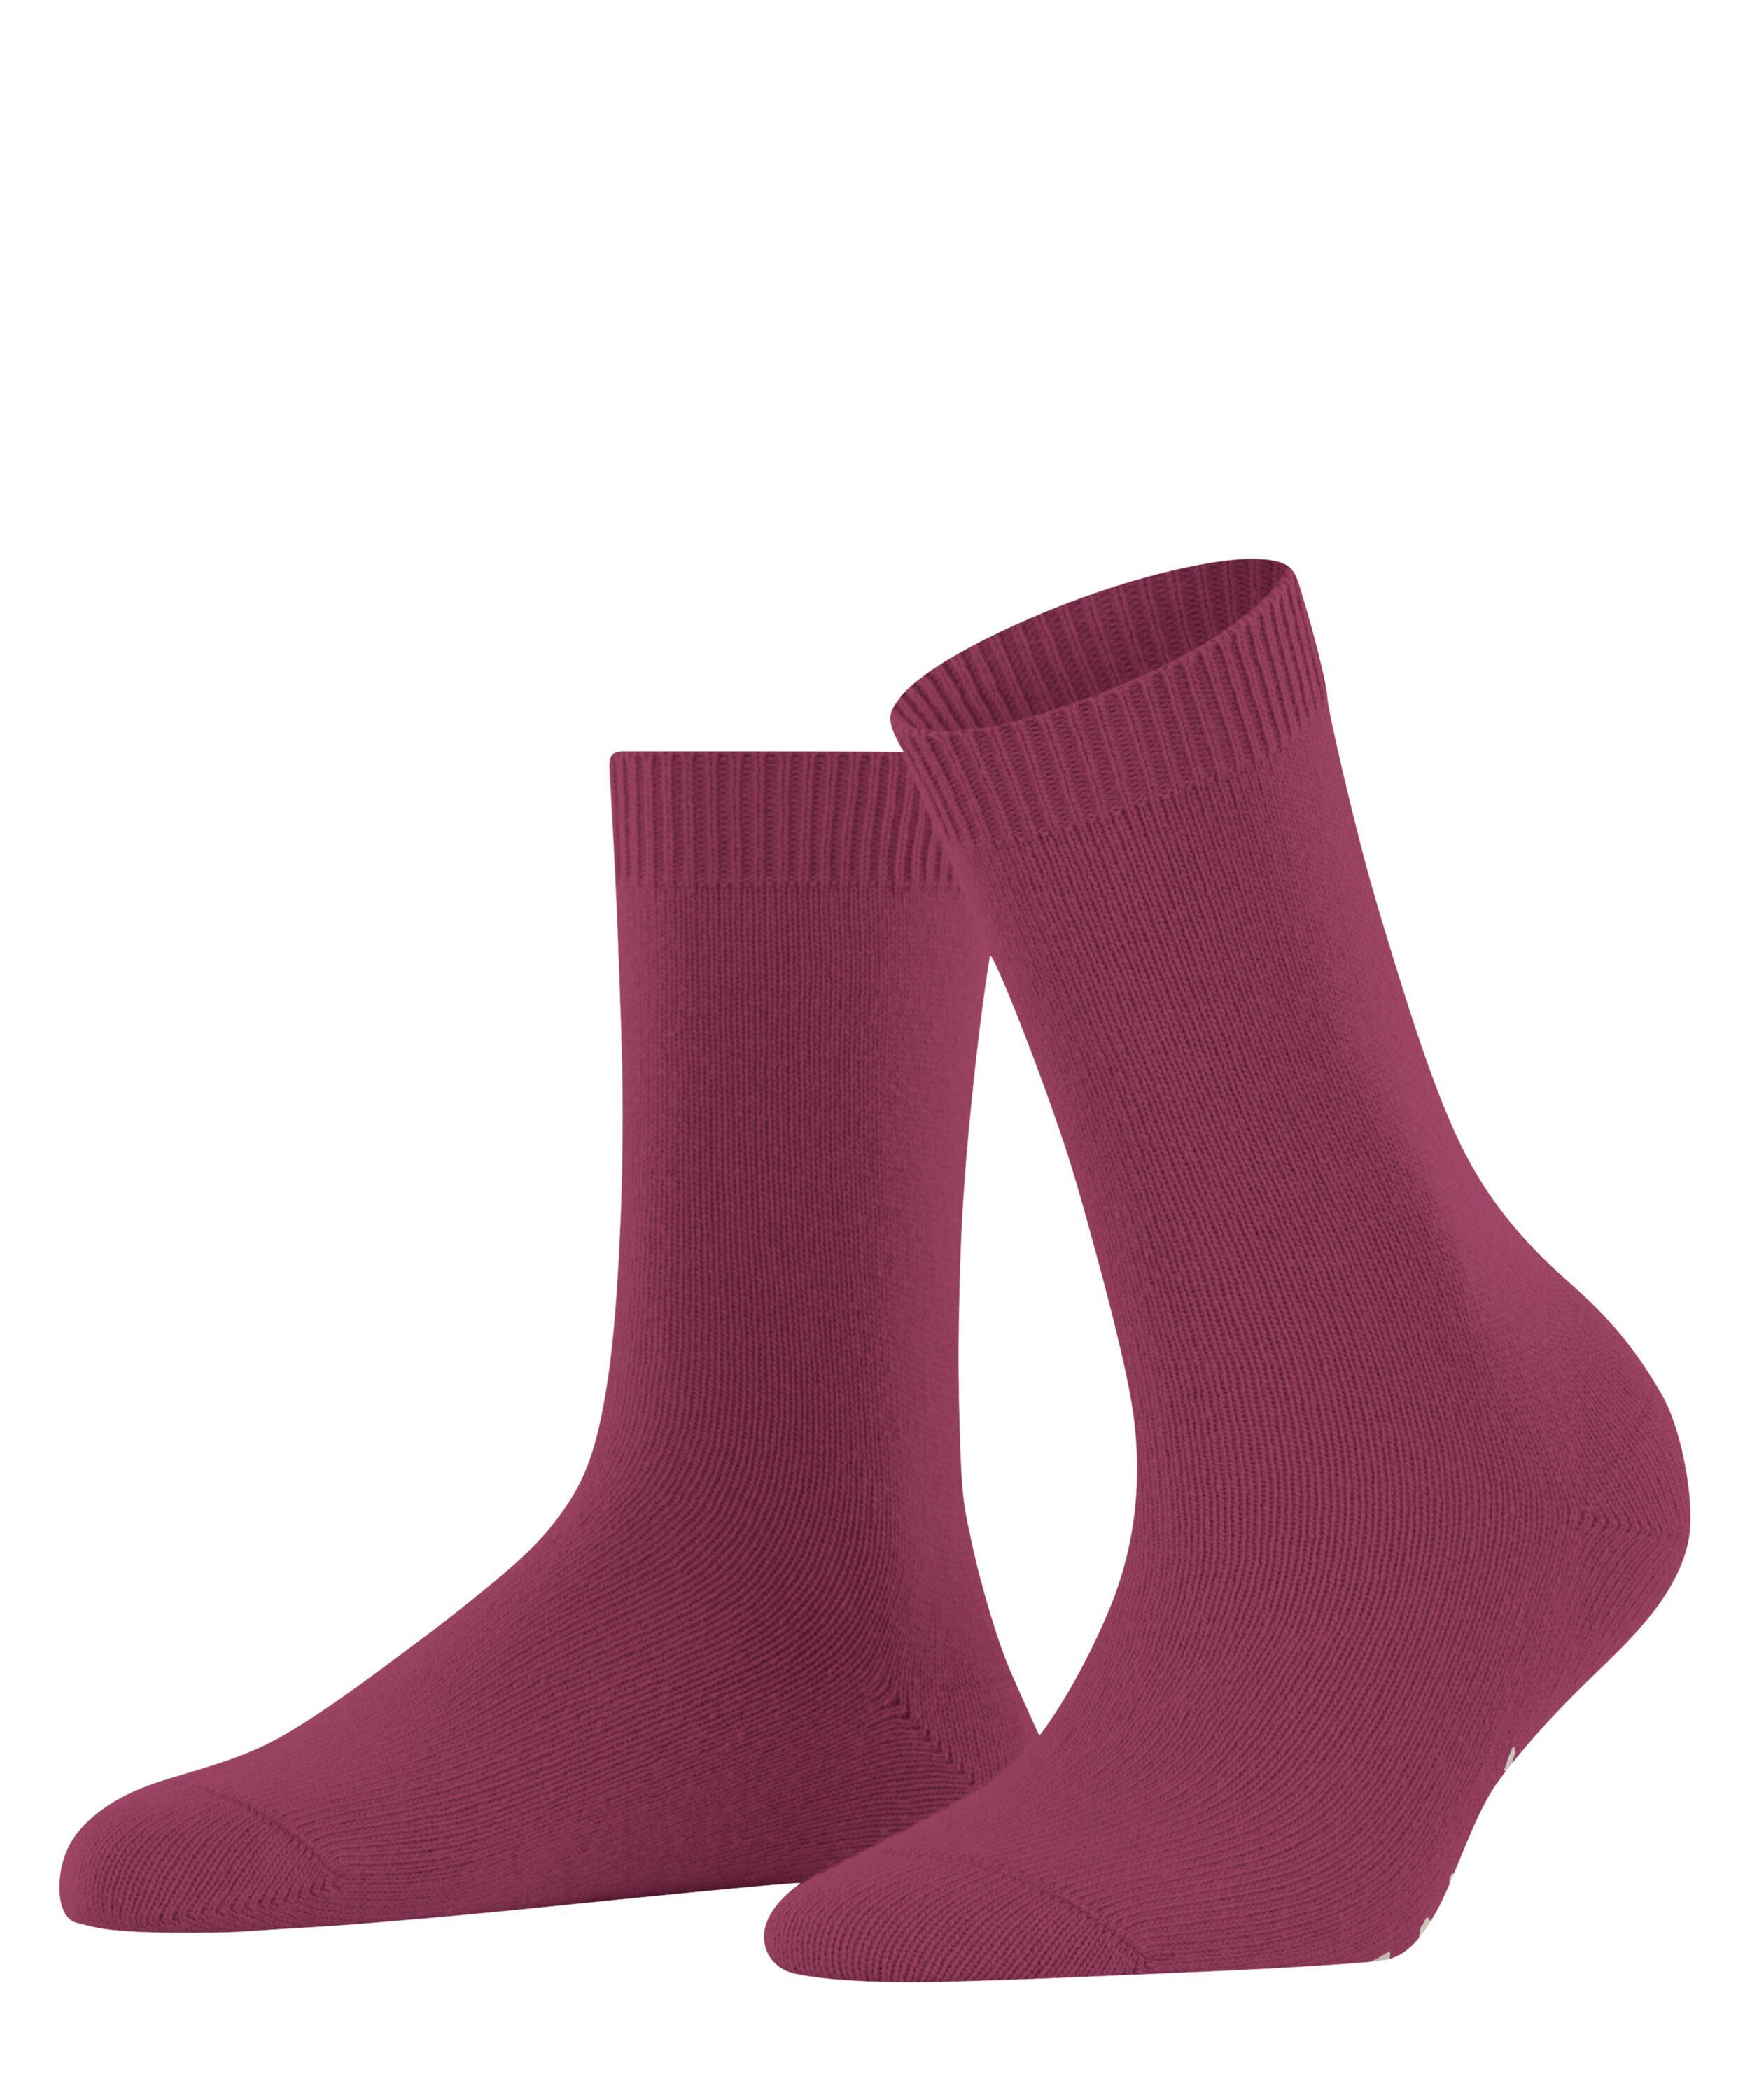 FALKE (8236) (1-Paar) red Cosy plum Wool Socken